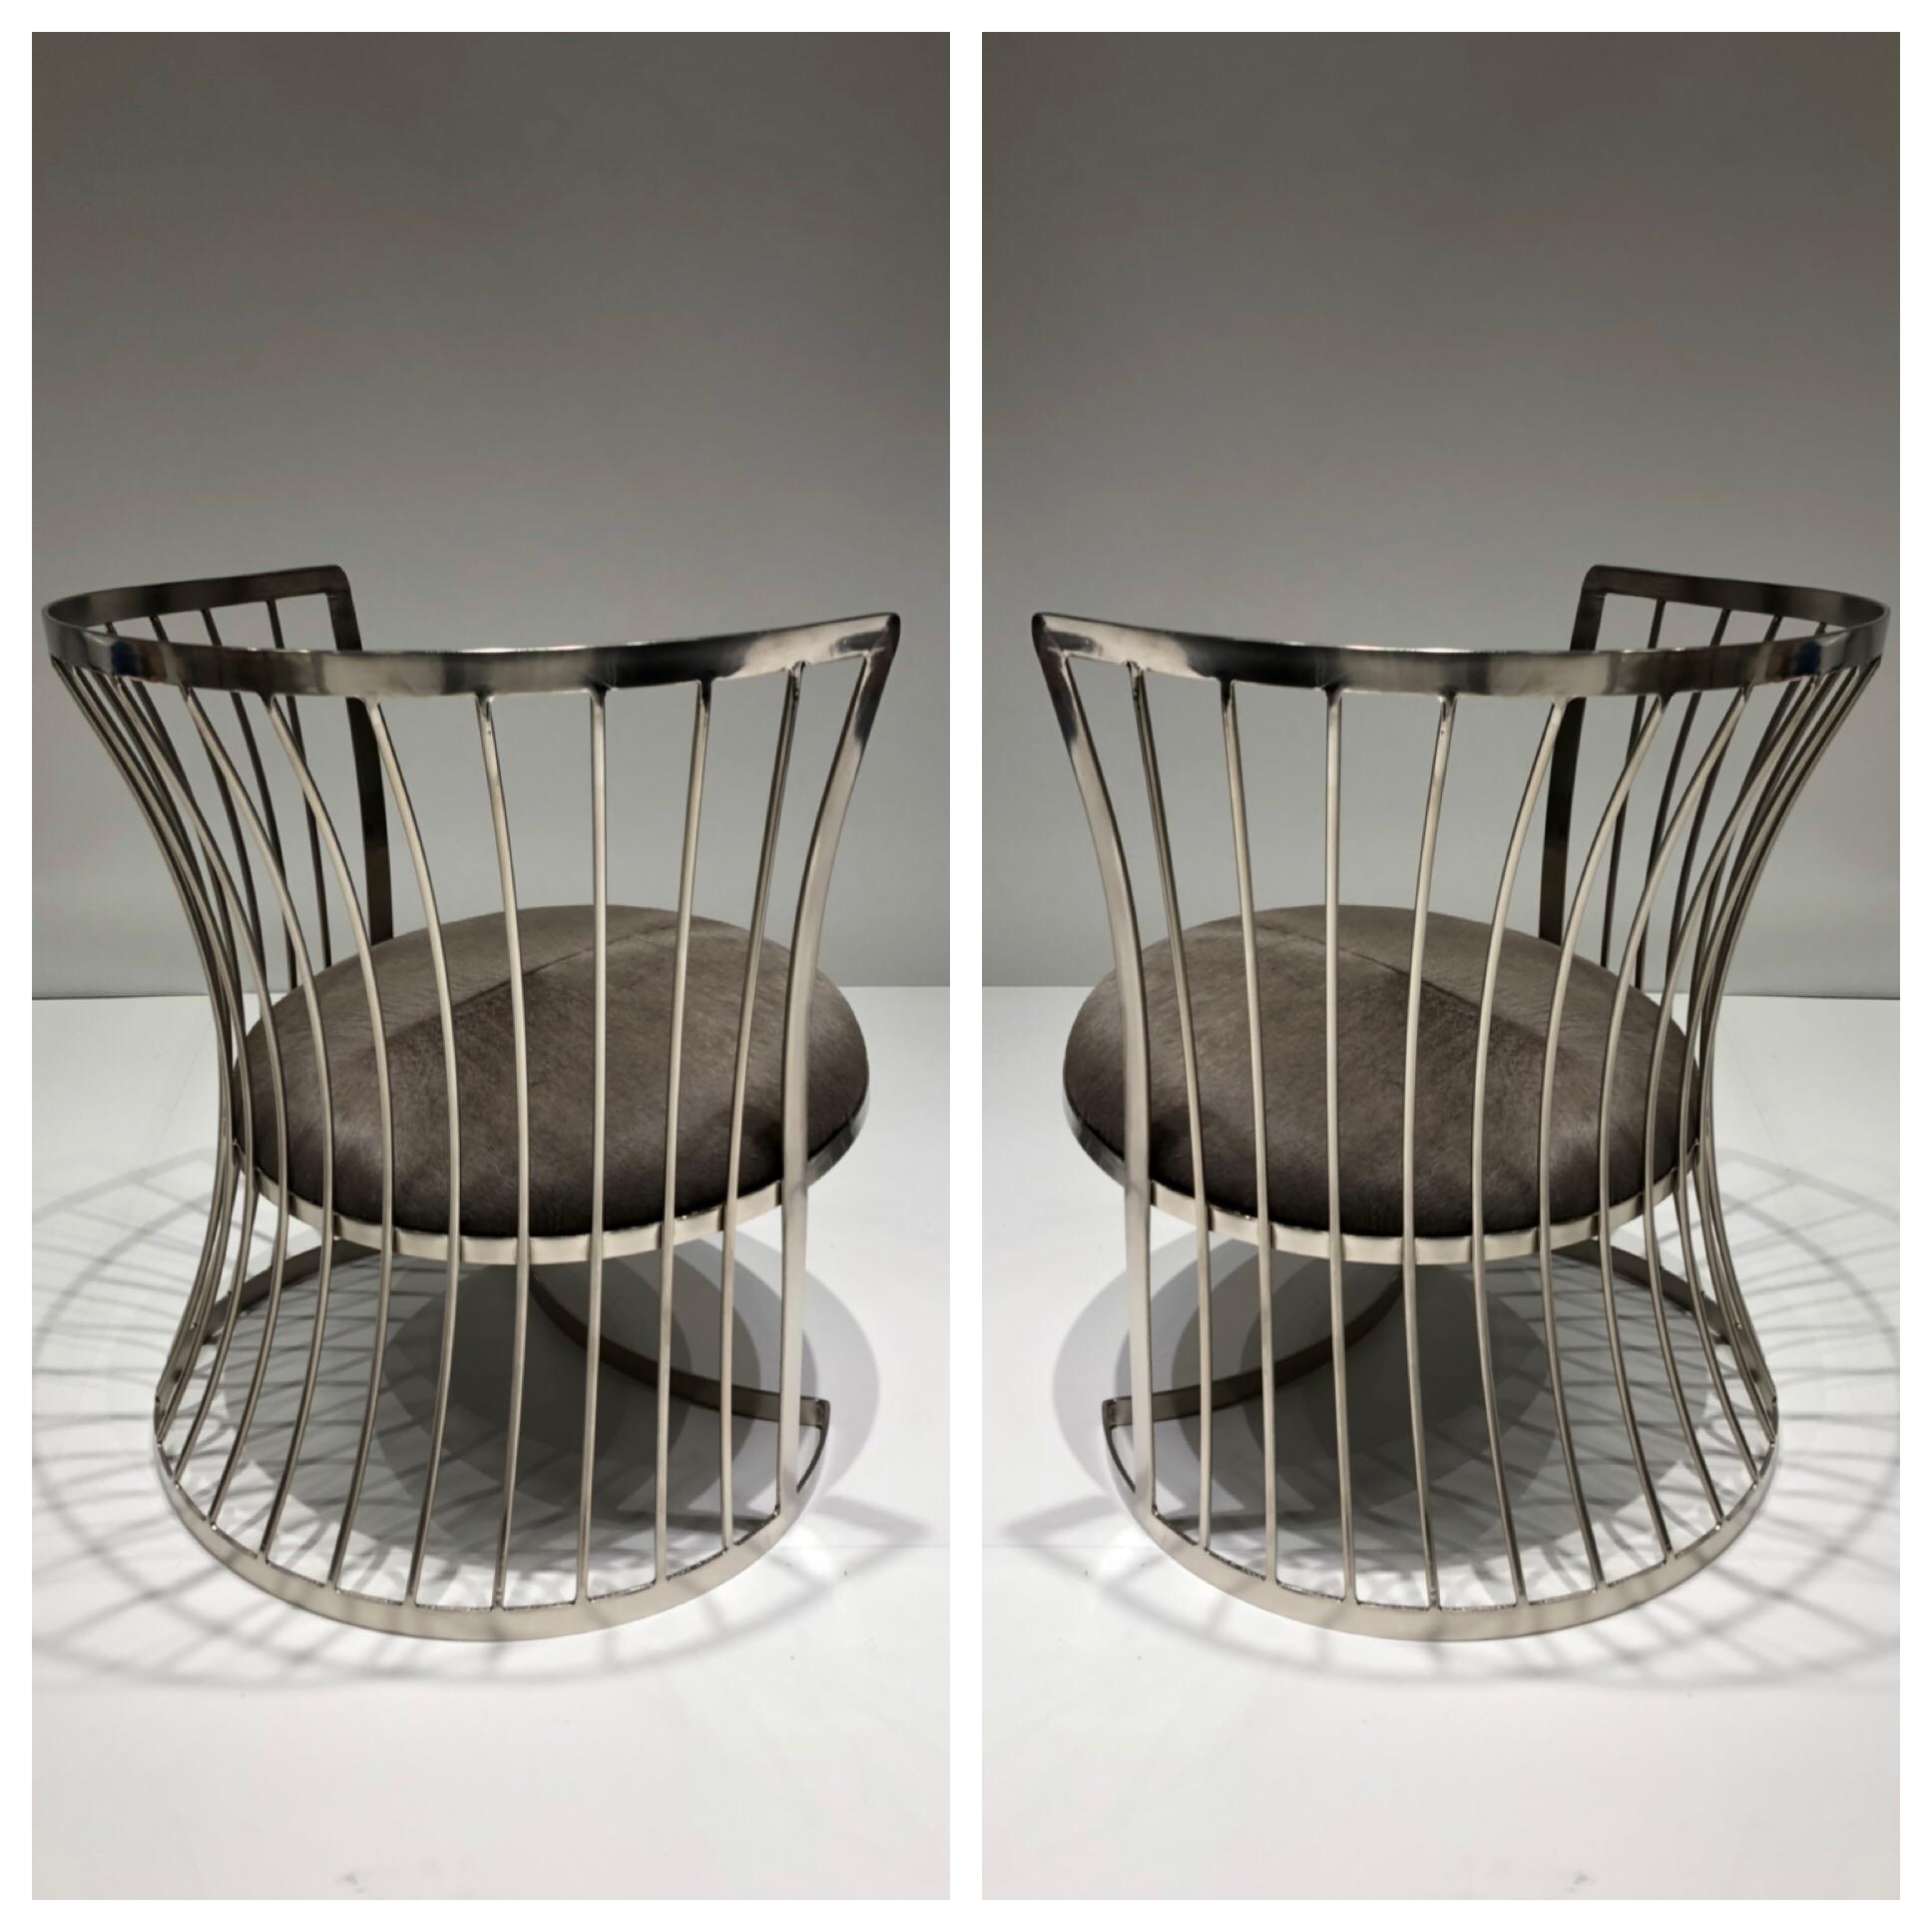 Une paire de chaises longues glamour en nickel satiné, conçues dans les années 1960 par Russell Woodard. Les chaises ont été refaites à neuf et les sièges récupérés dans une peau de vache grise.
Dimensions : 26.5